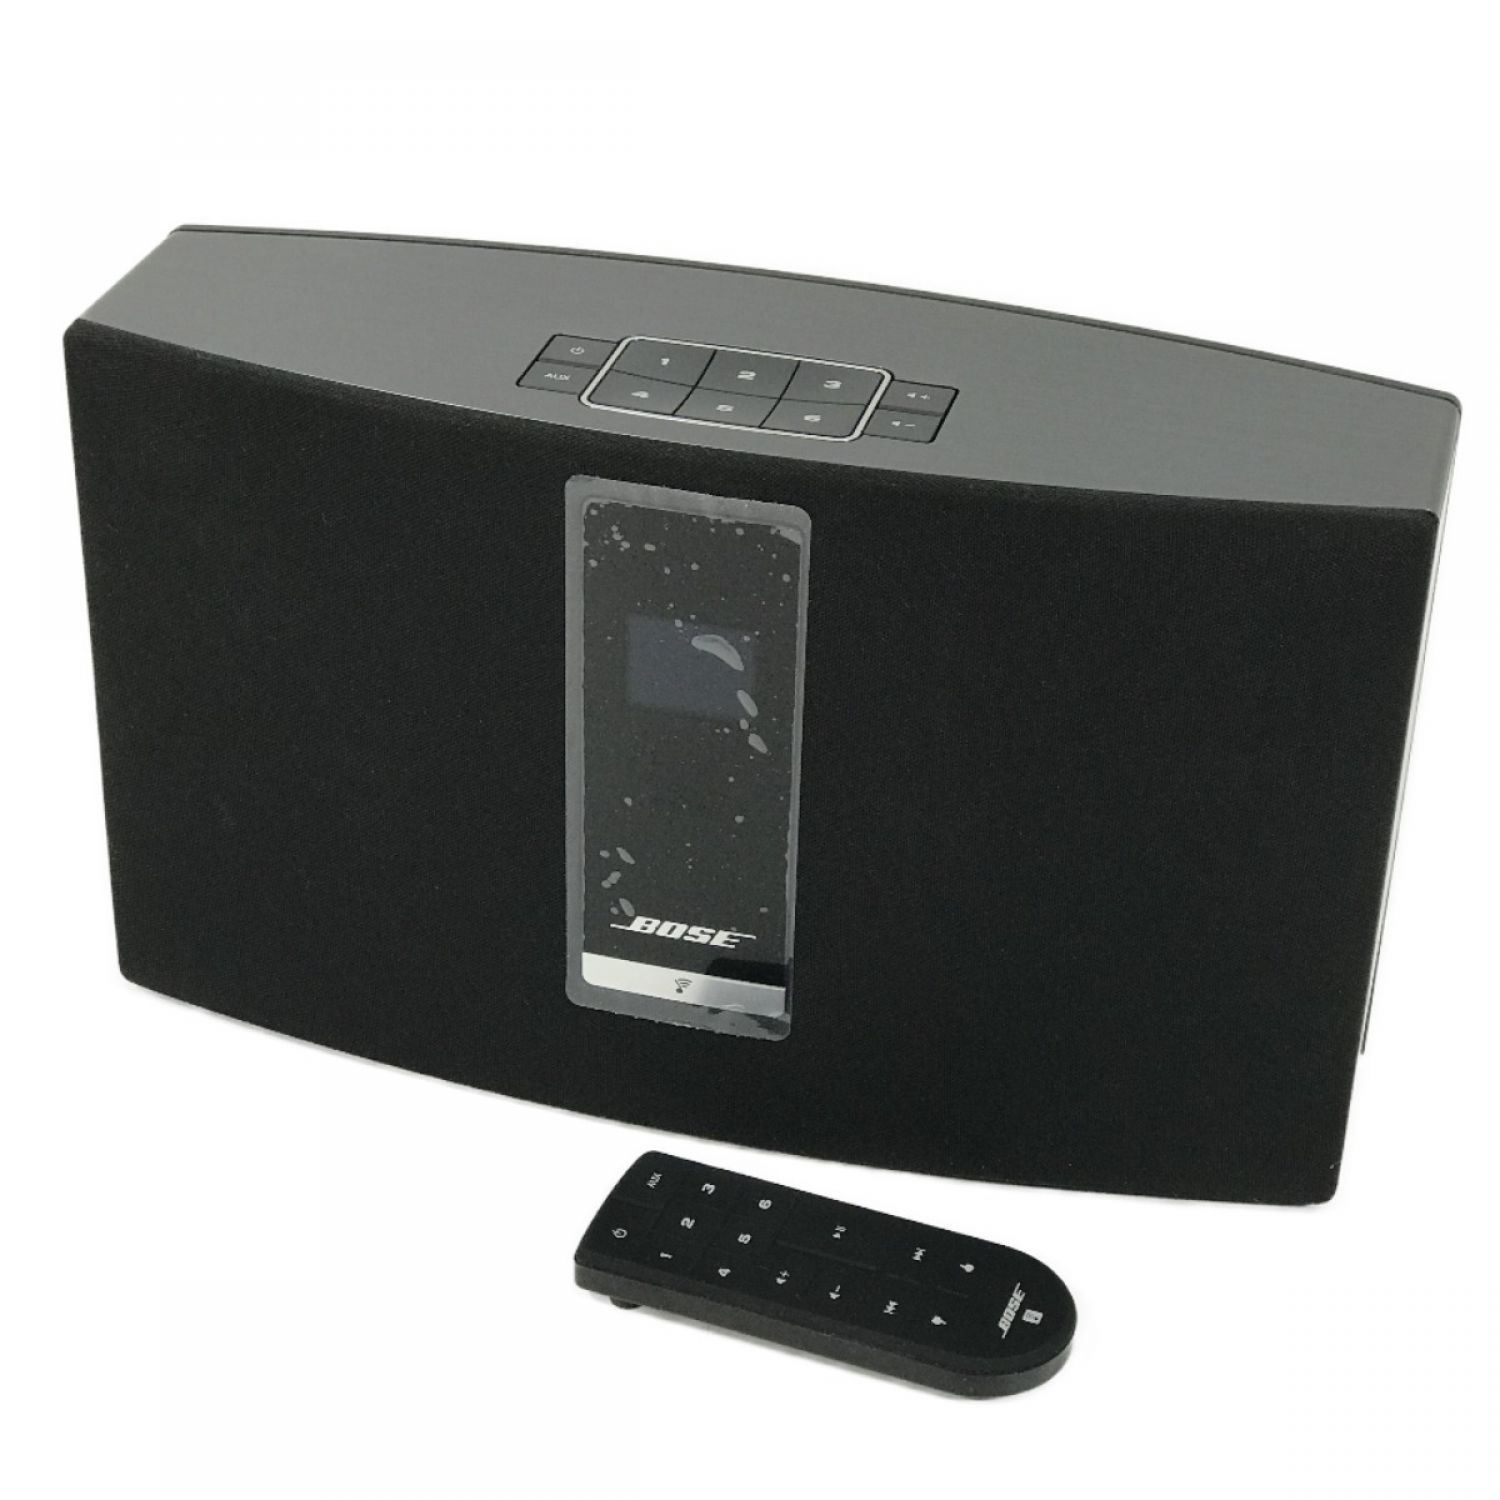 SoundTouch 20 II wireless speaker